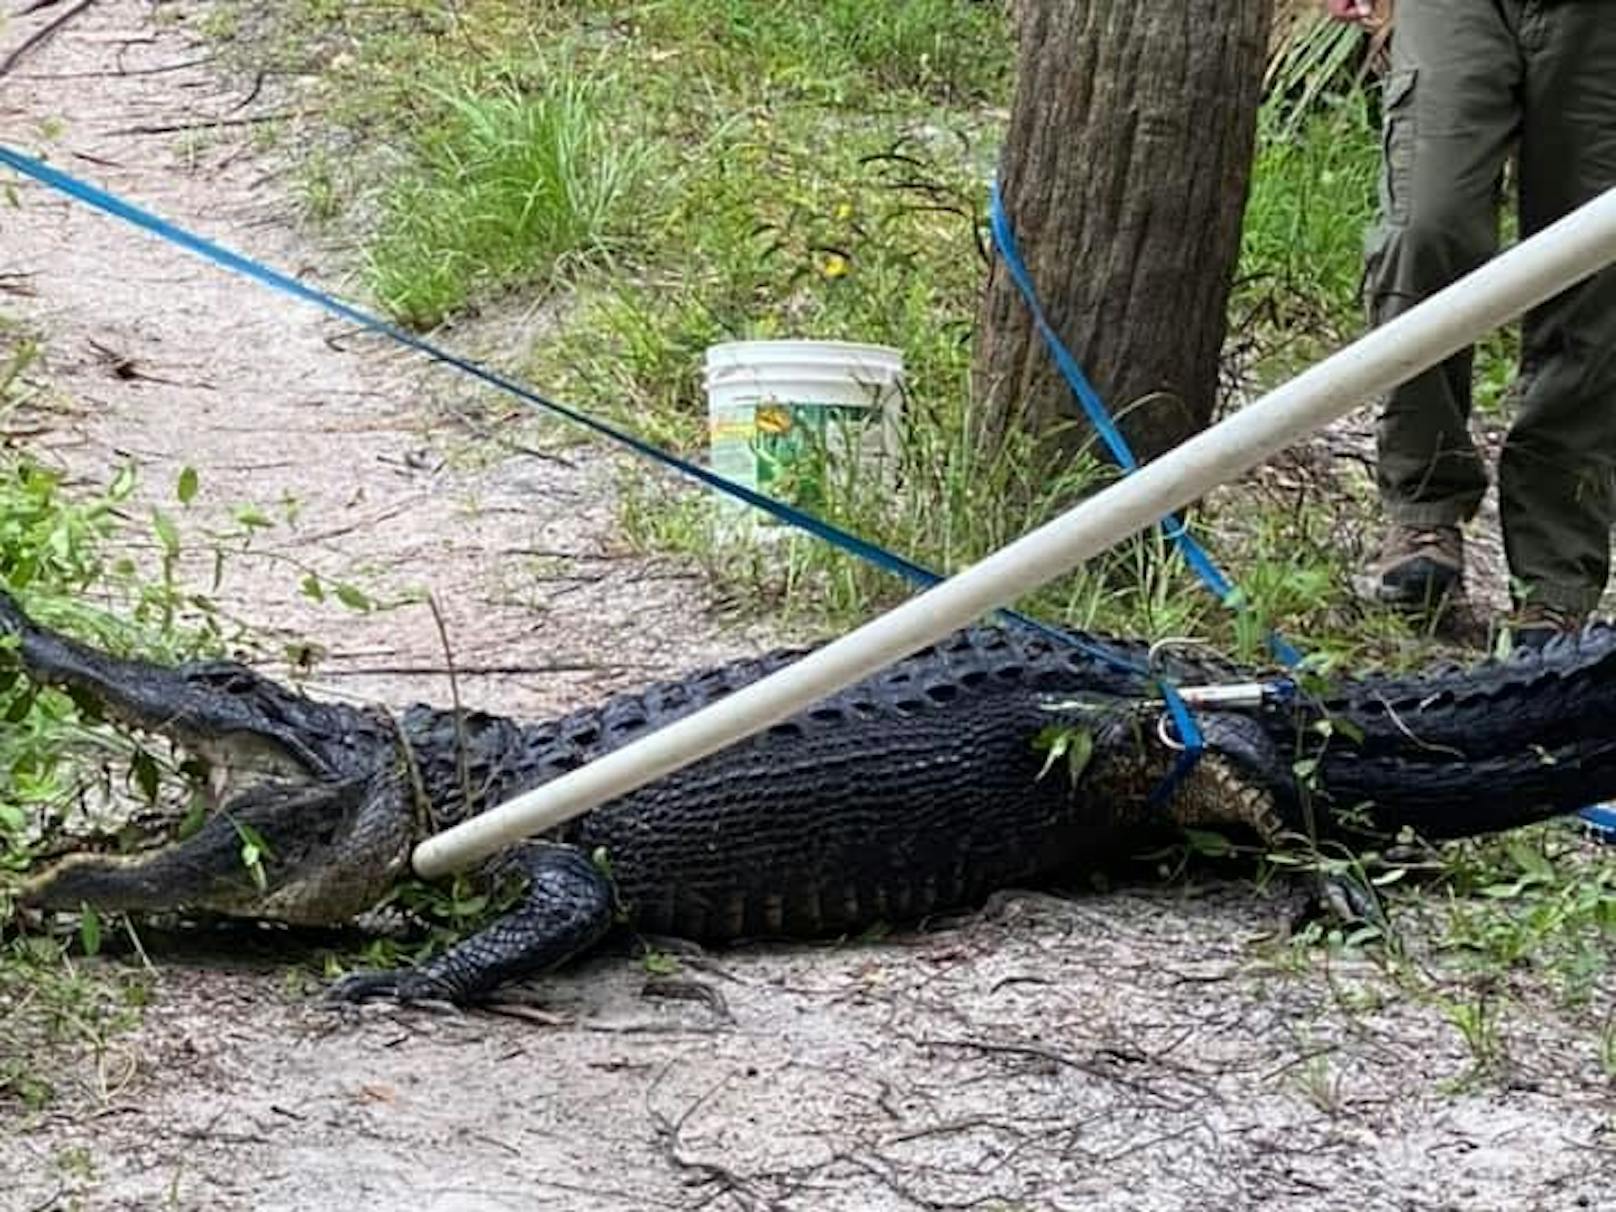 Dabei fiel er einem Alligator direkt vor die Zähne – und dieser schnappte sofort zu!